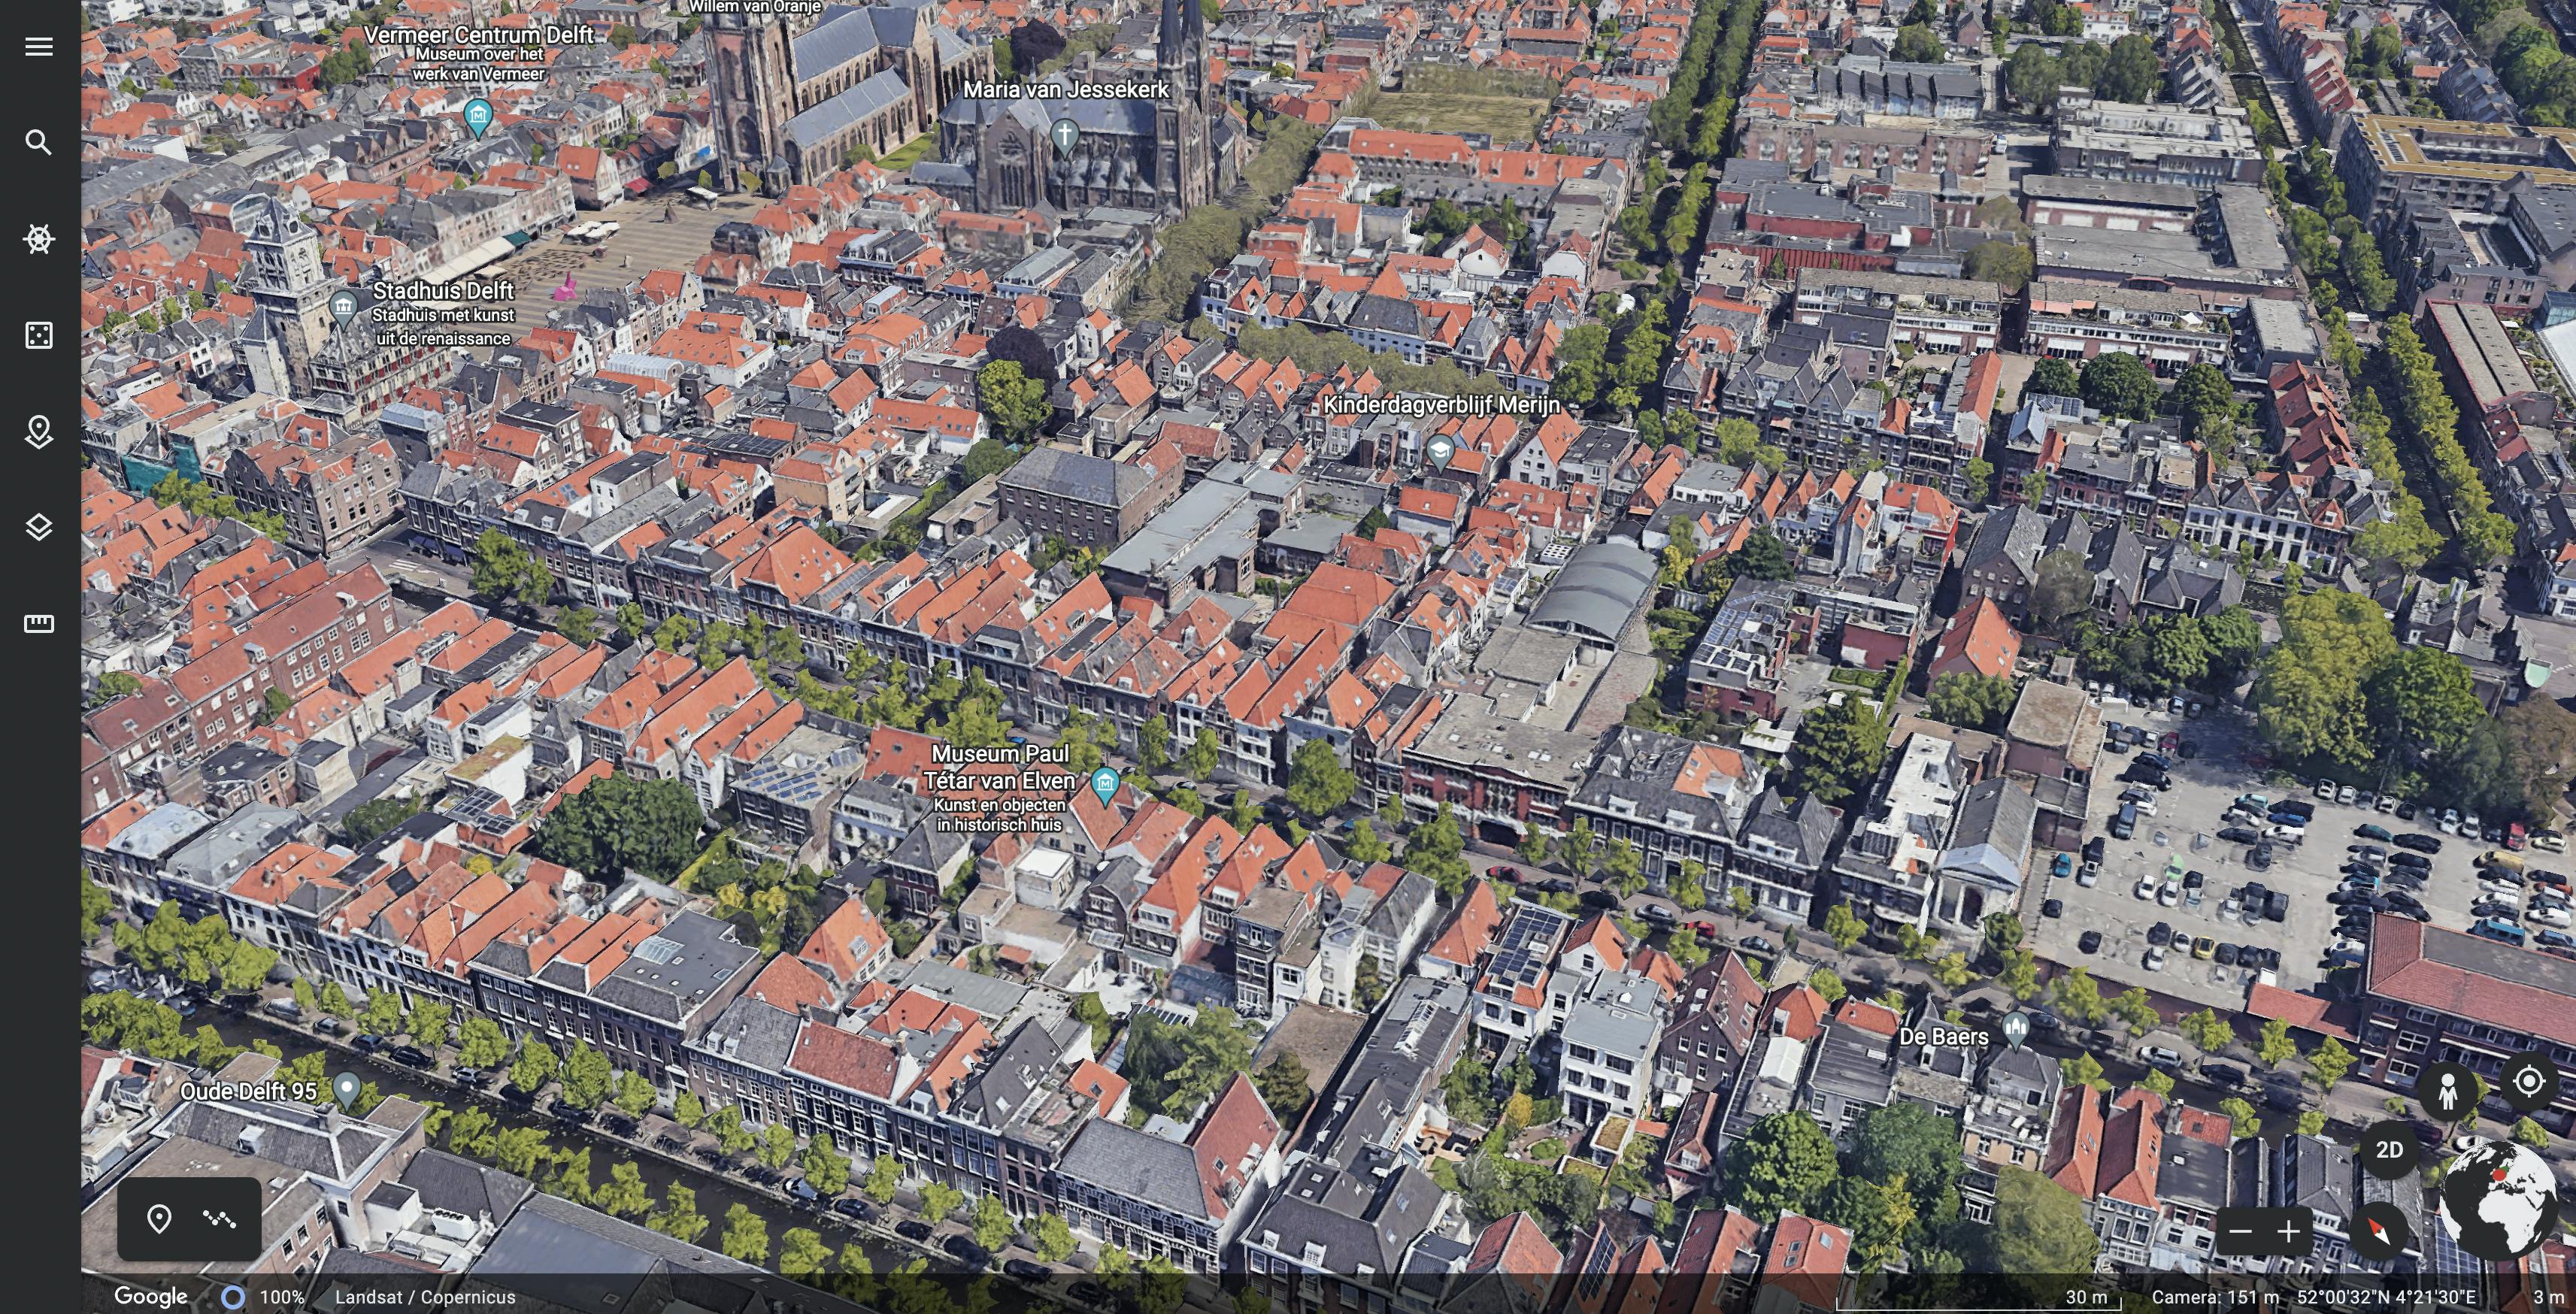 Google Maps 3D display of Delft